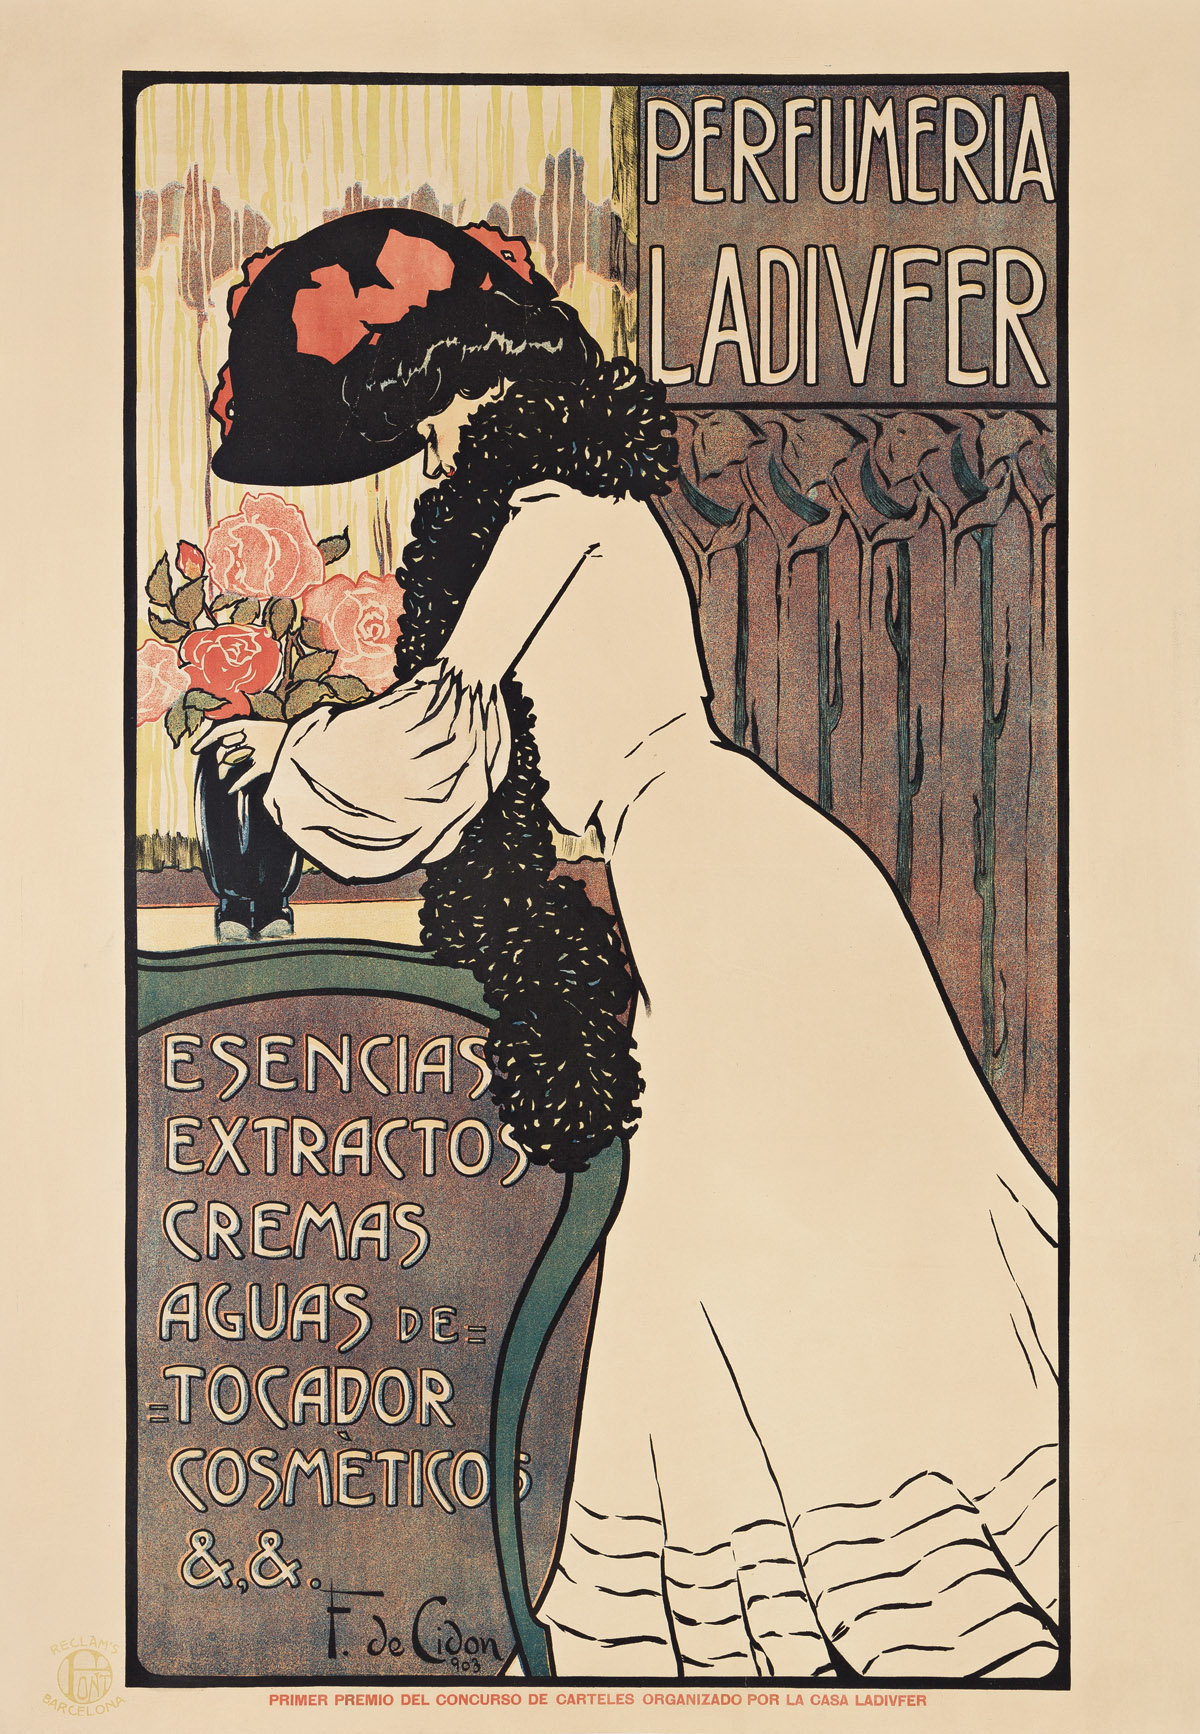 FRANCISCO DE CIDÓN NAVARRO (1871-1943).  PERFUMERIA LADIVFER. 1903. 51x35 inches, 127x89 cm. Font, Barcelona.